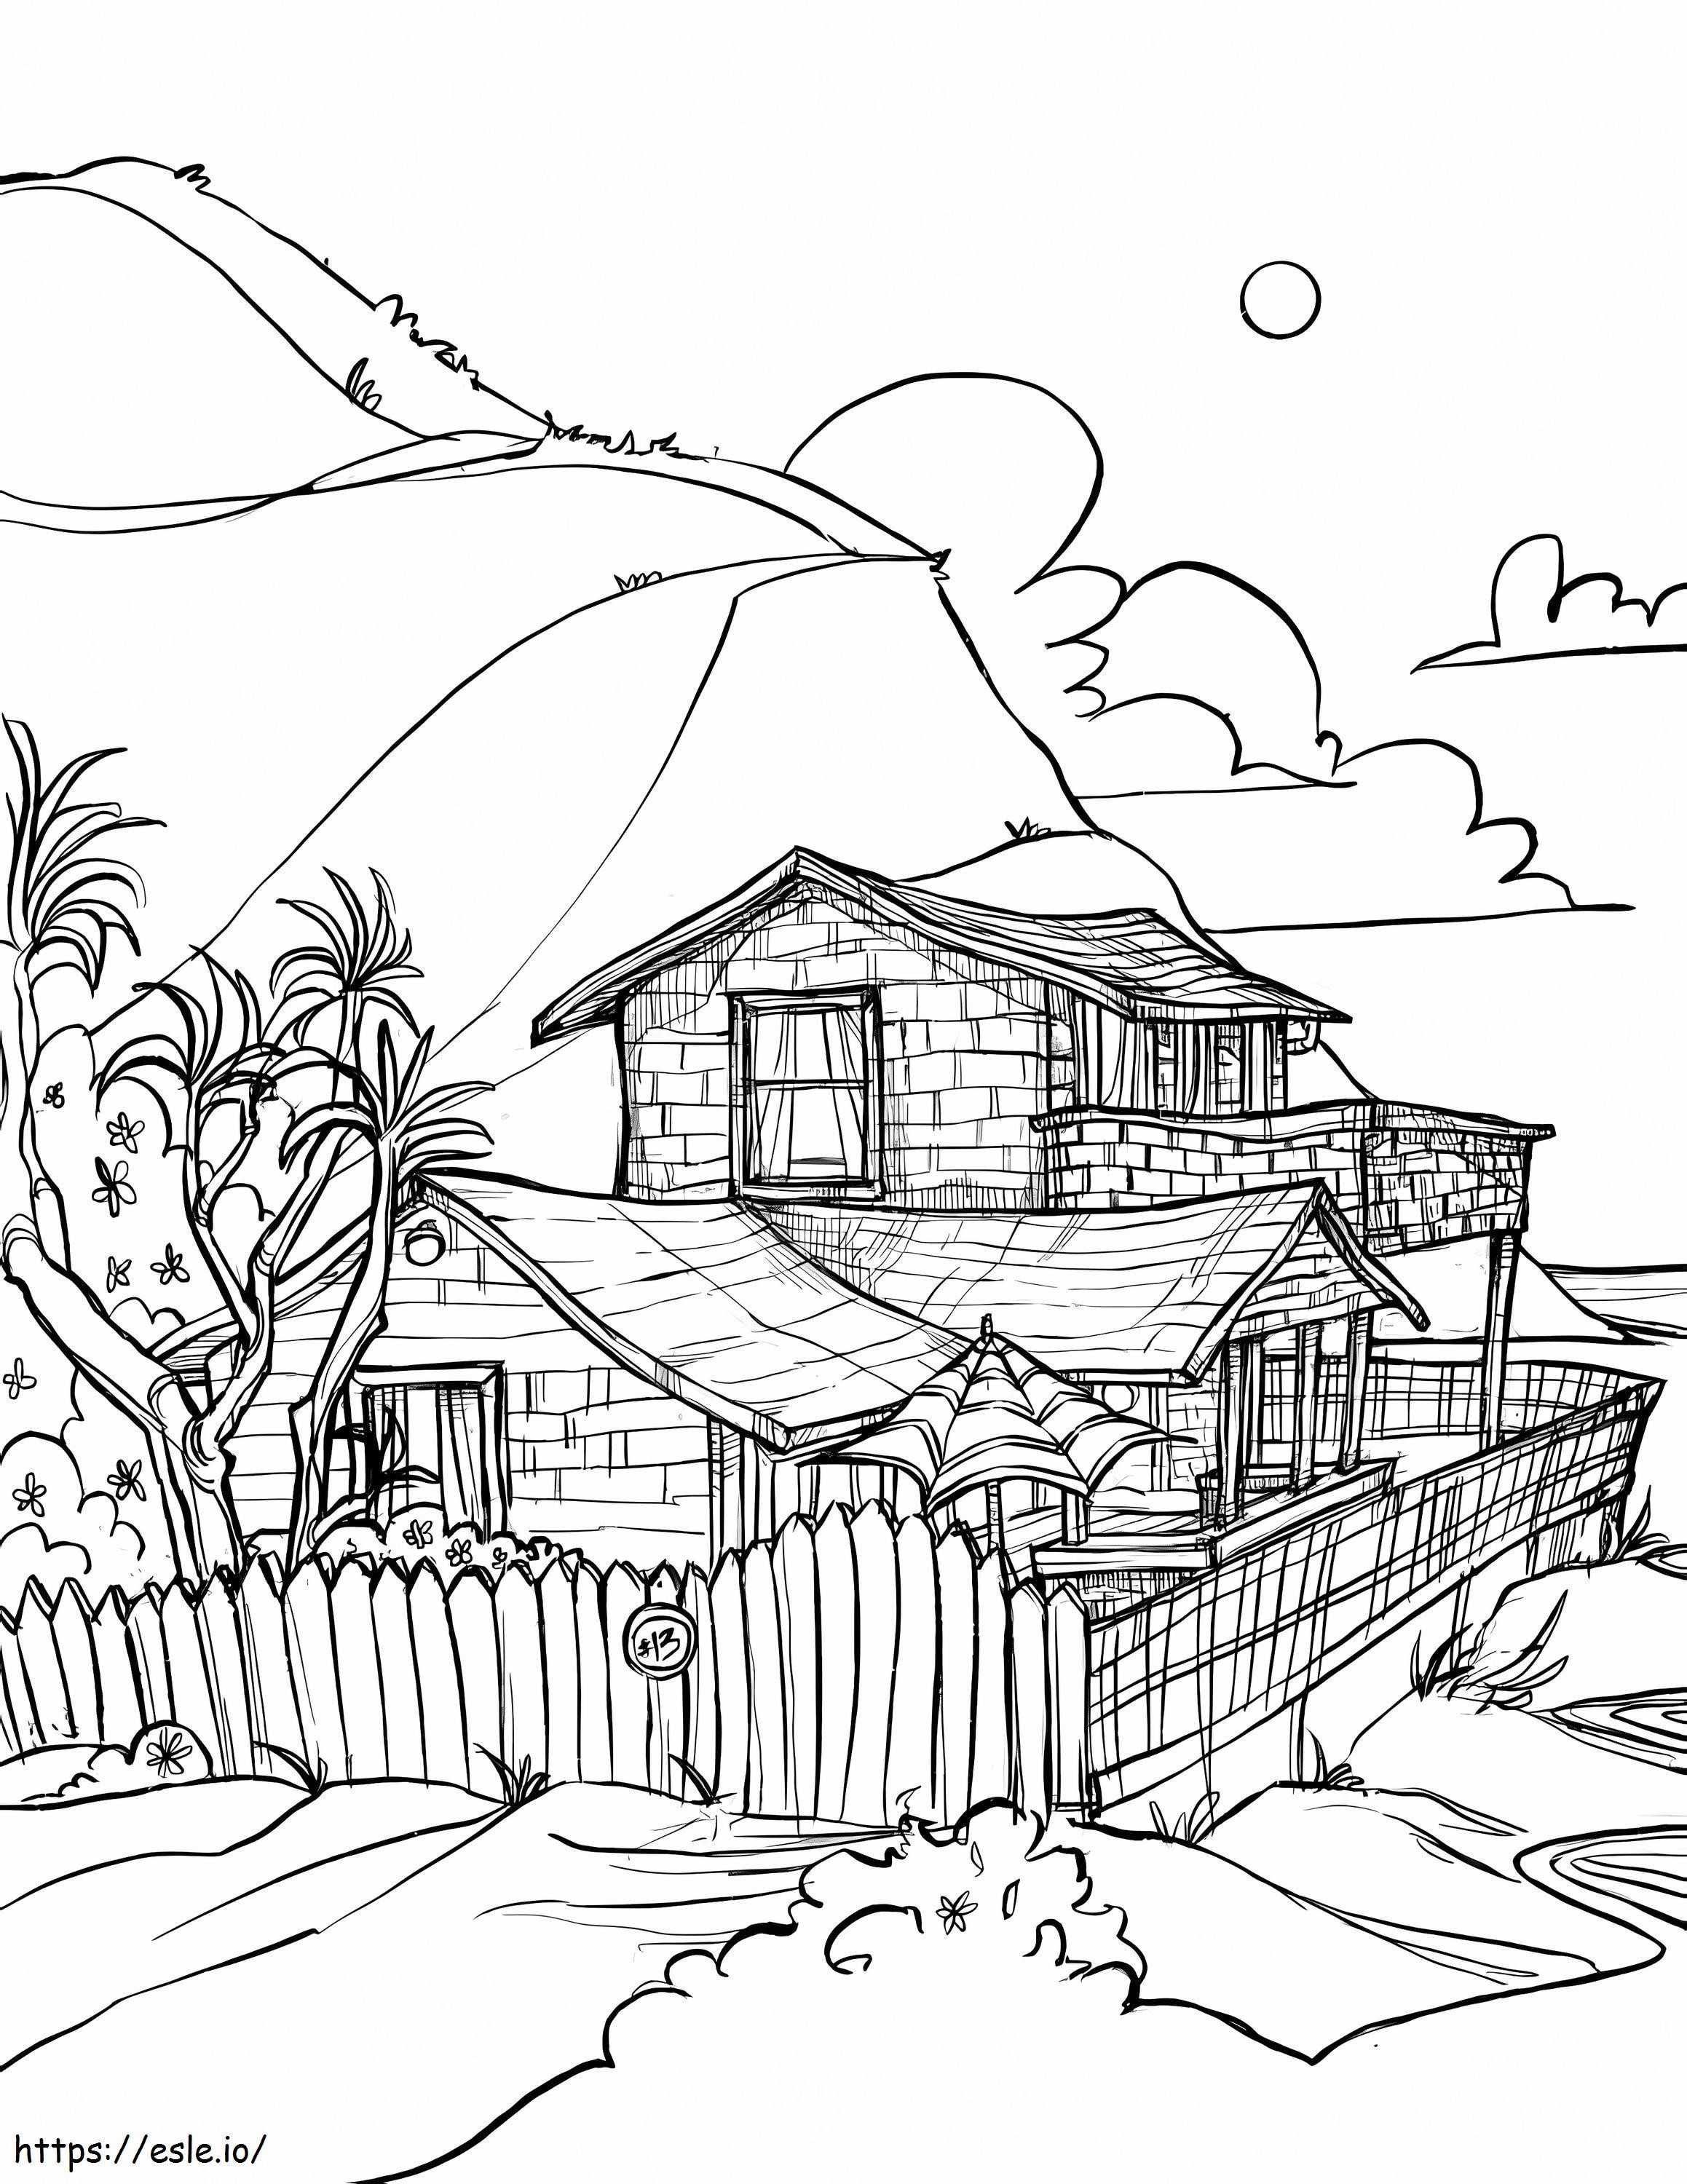 Desenhando uma casa na praia para colorir